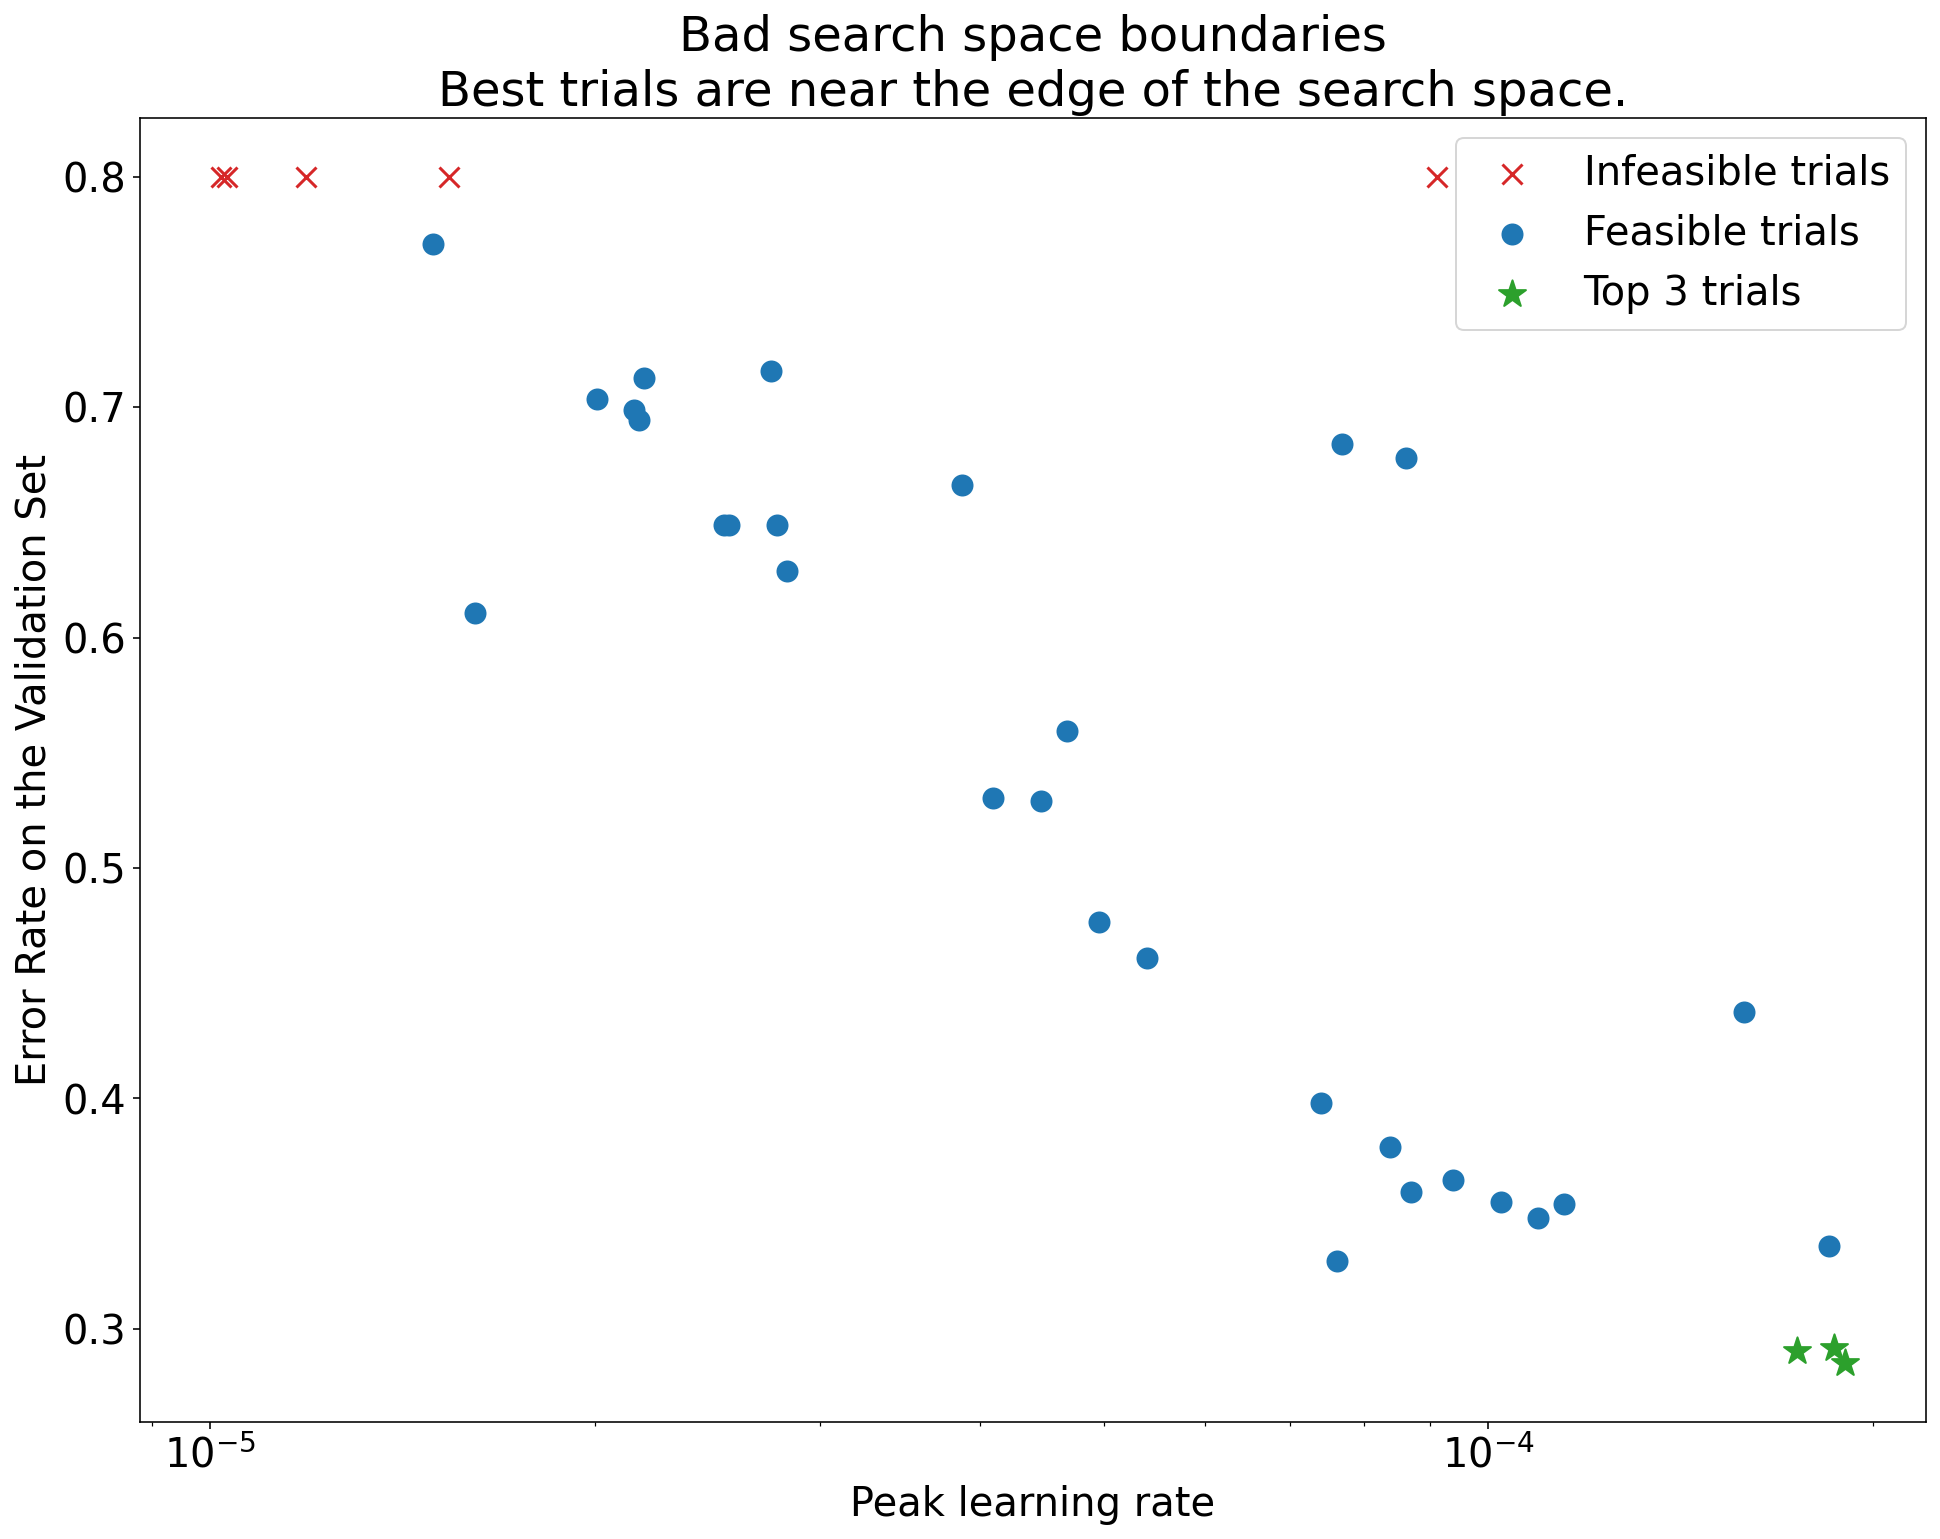 呈現驗證集 (y 軸) 與錯誤學習率 (x 軸) 的錯誤率圖表，展示不良搜尋空間邊界。在這個圖表中，最佳試用期 (錯誤率最低) 位於搜尋區域邊緣，亦即最高學習率最高。